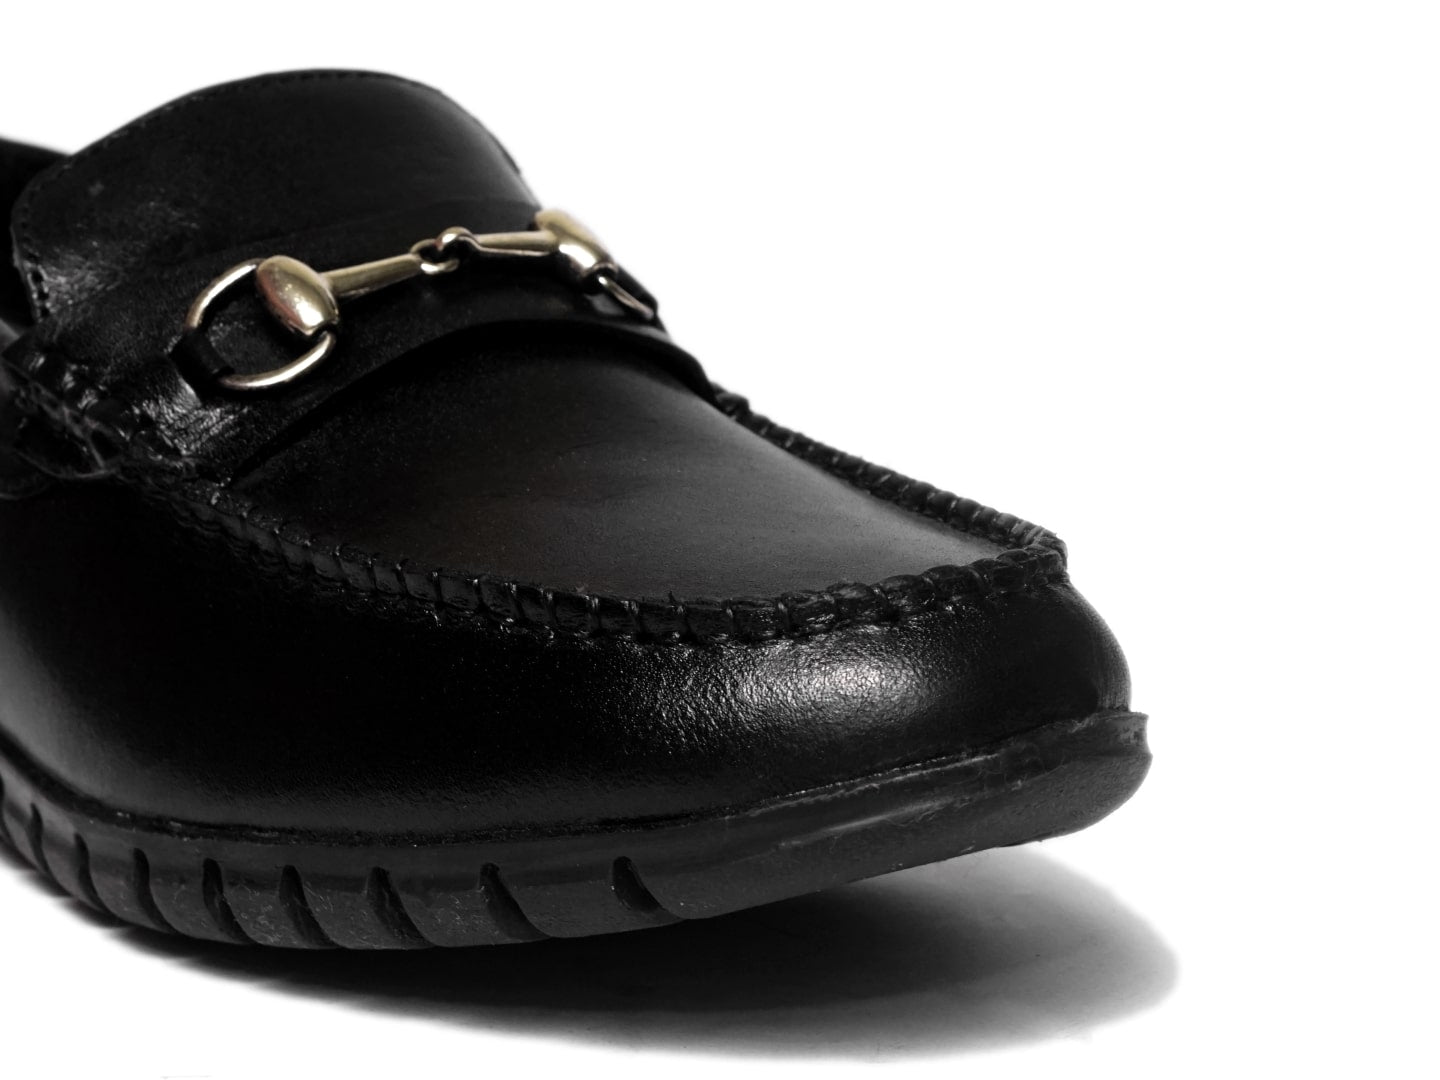 Men Footwear, Black Loafers